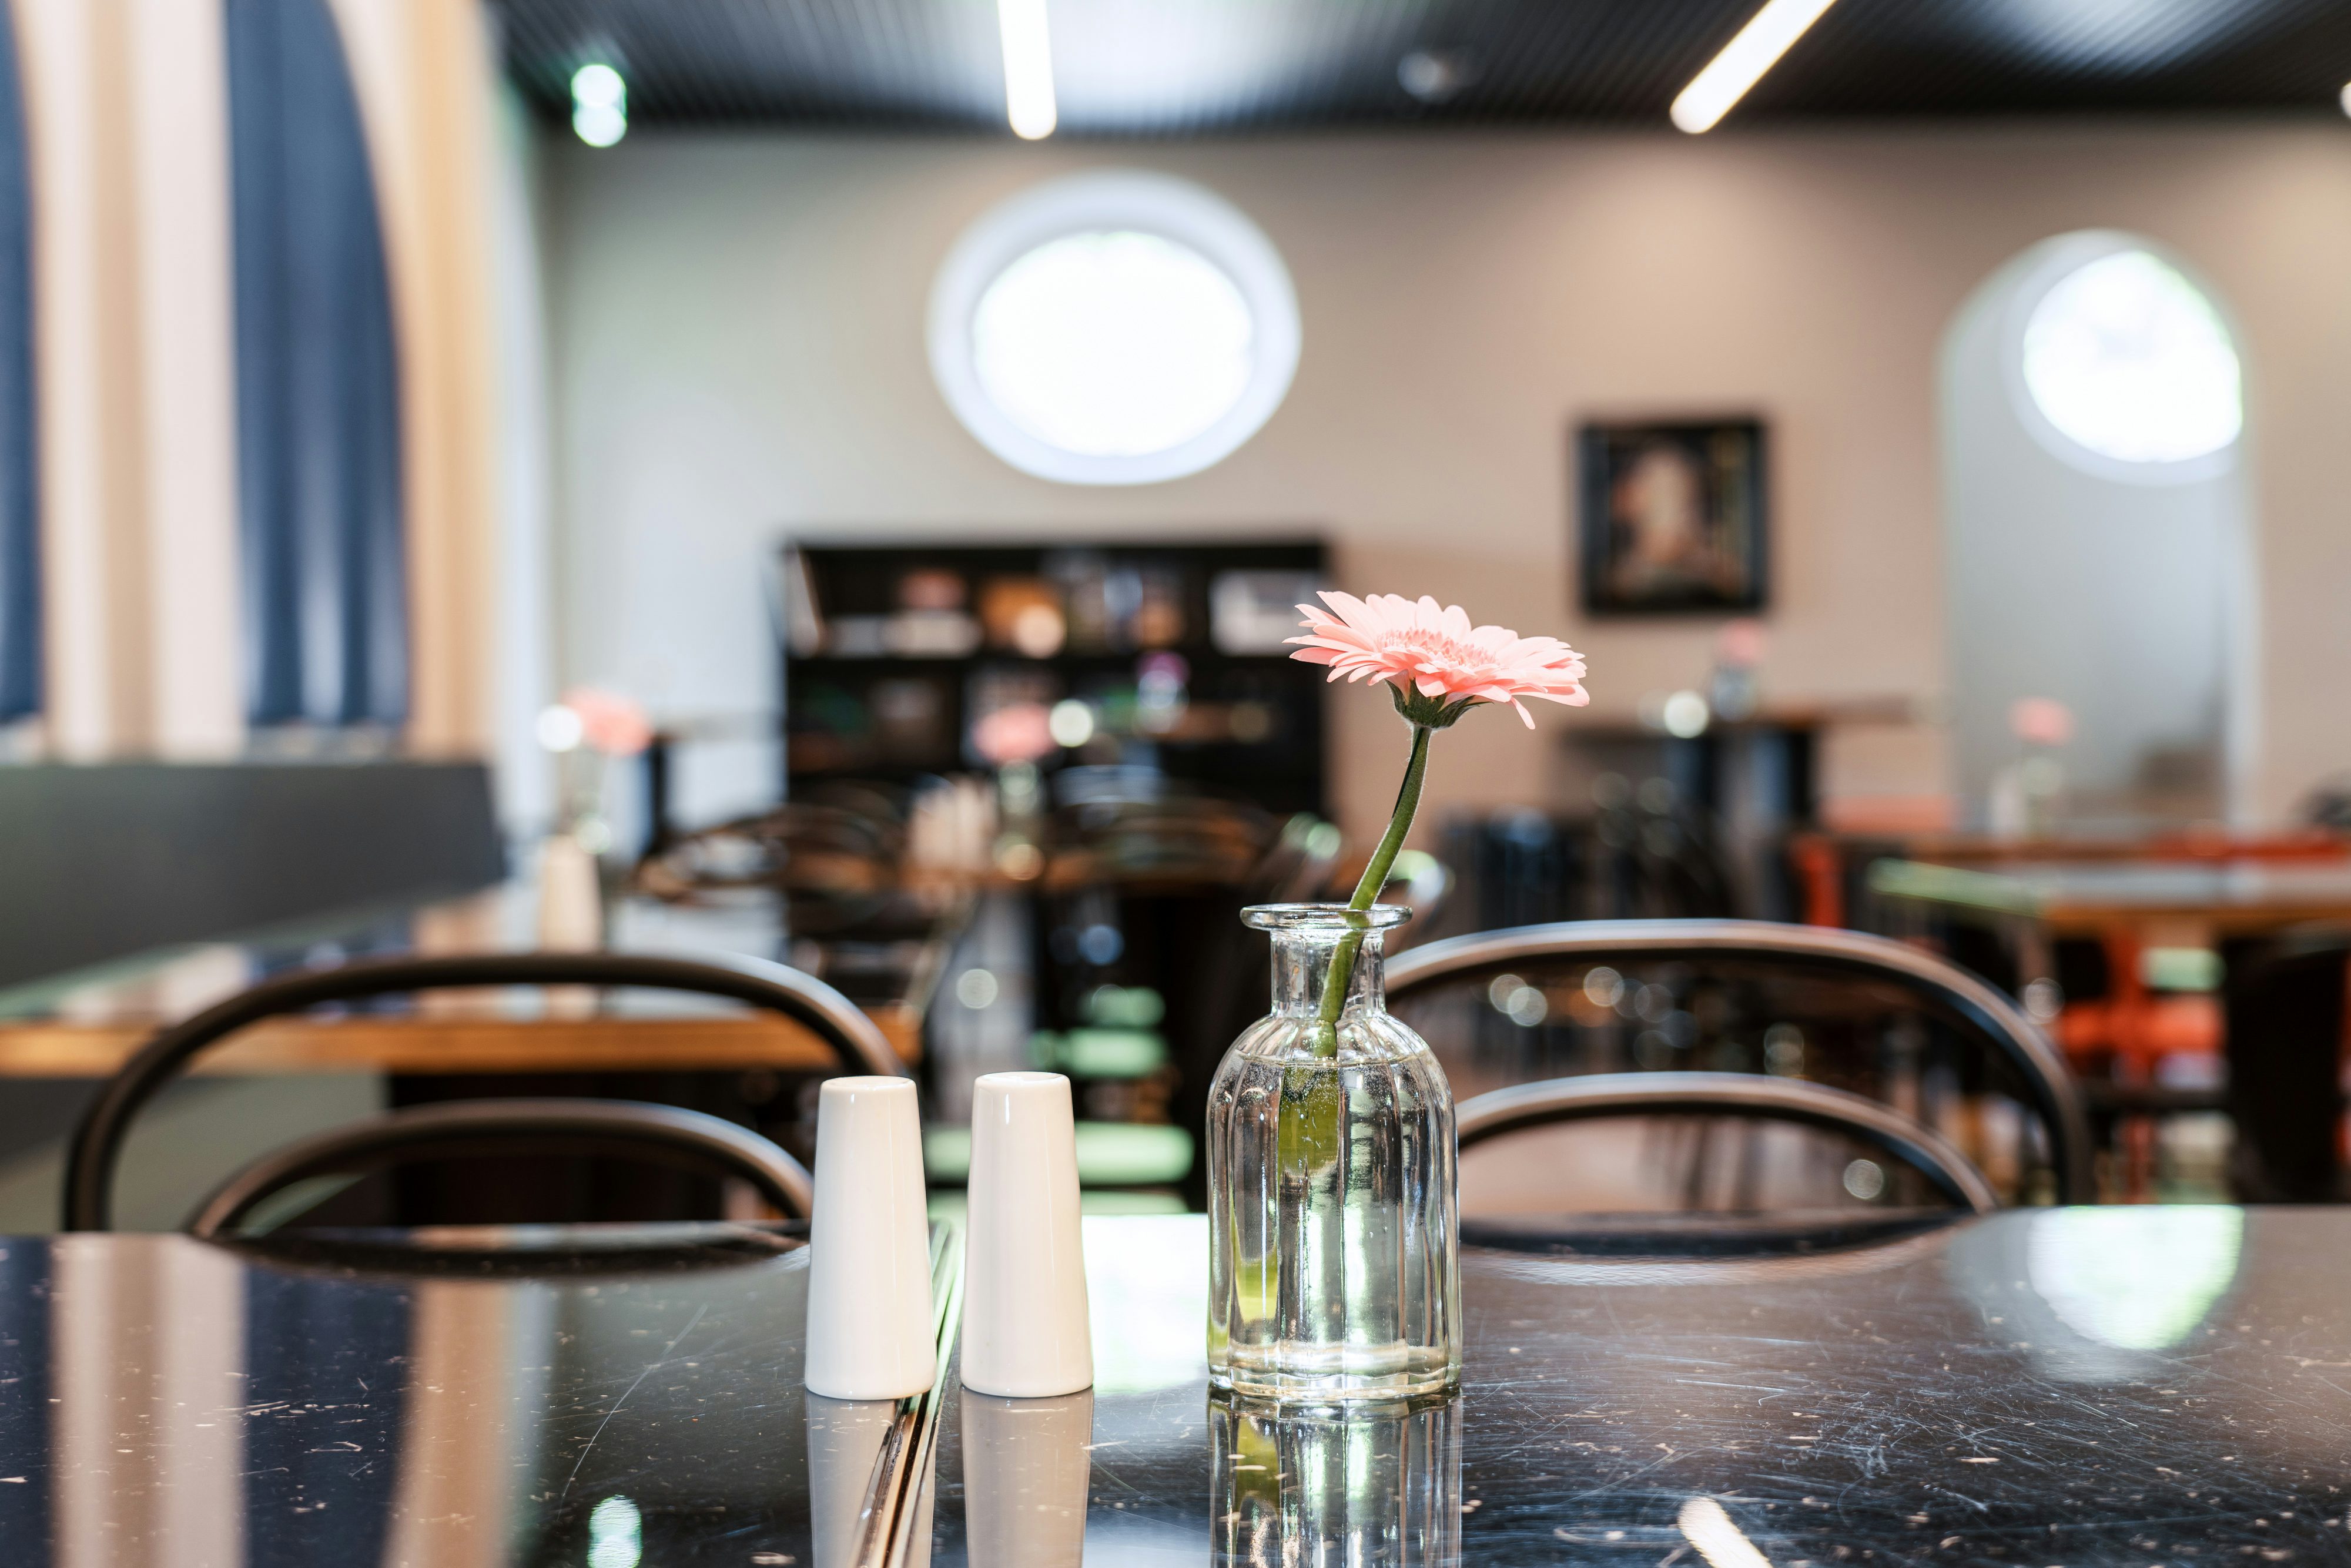 Speisesaal im Mitarbeiterrestaurant der Josef Rädlinger Unternehmensgruppe: Detailaufnahme einer Blume in einer Vase auf einem Tisch